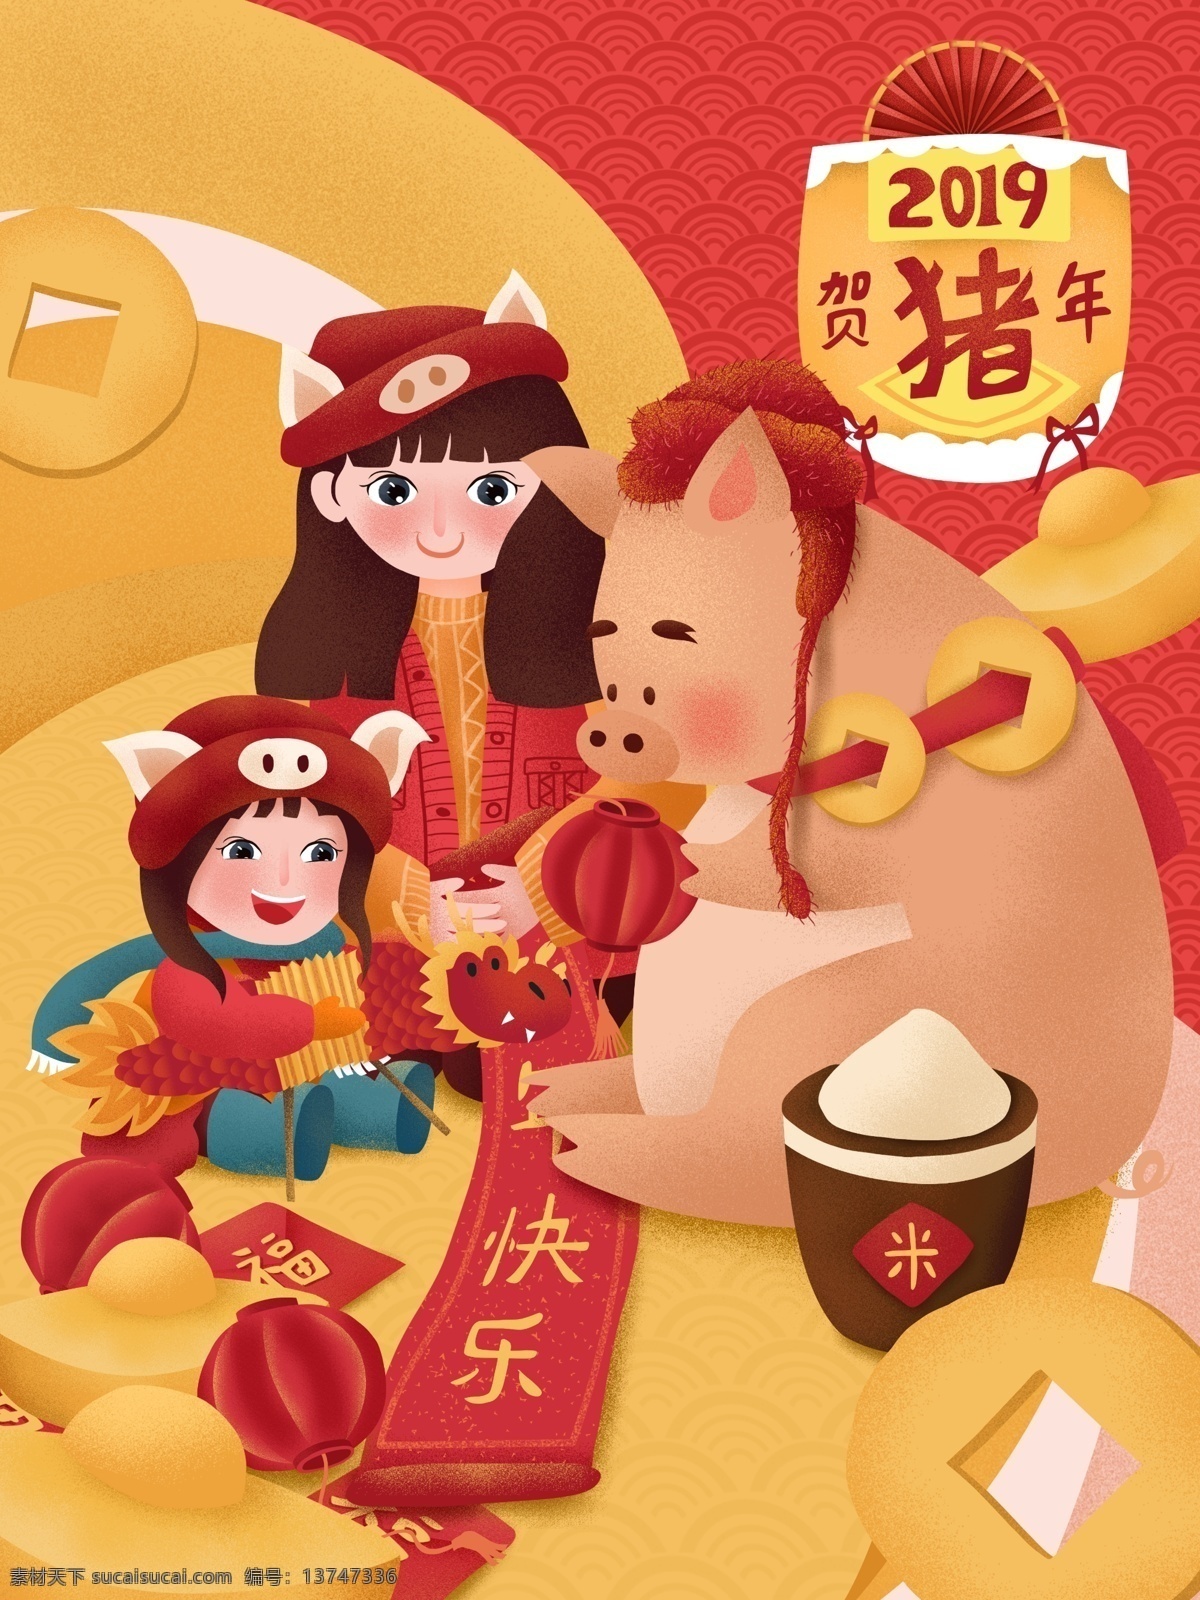 原创 手绘 插画 治愈 喜庆 猪年 大吉 春节 红色 女孩 手绘插画 新春 猪 过年 对联 元宝